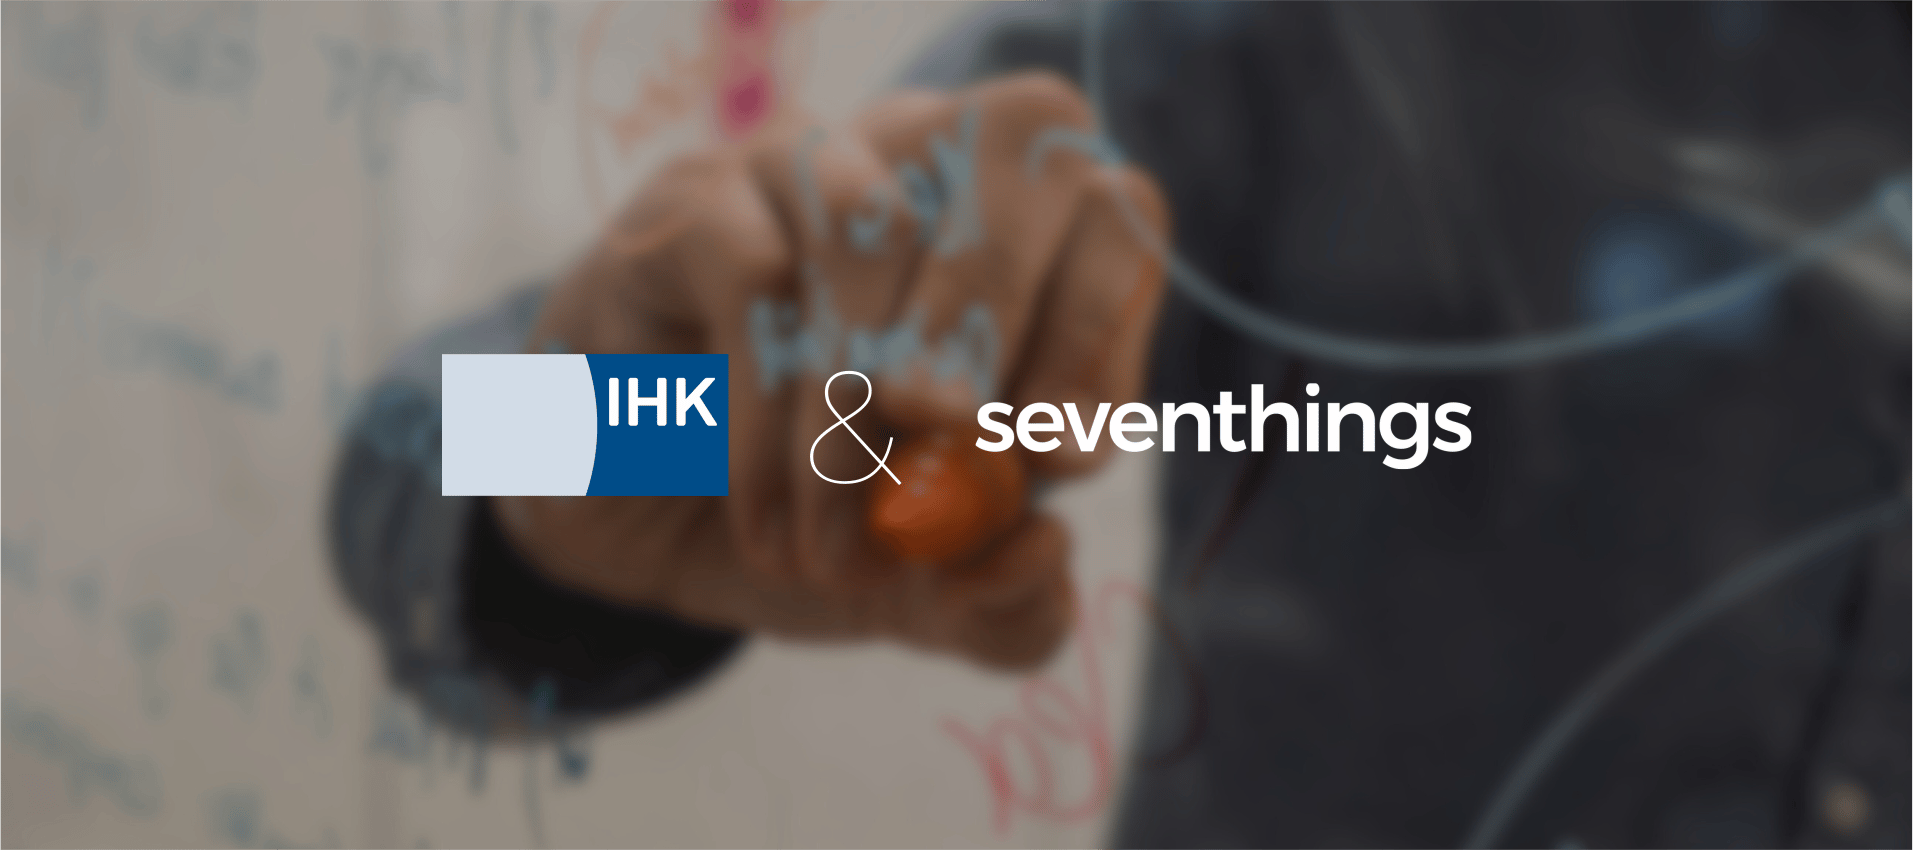 IHK und seventhings